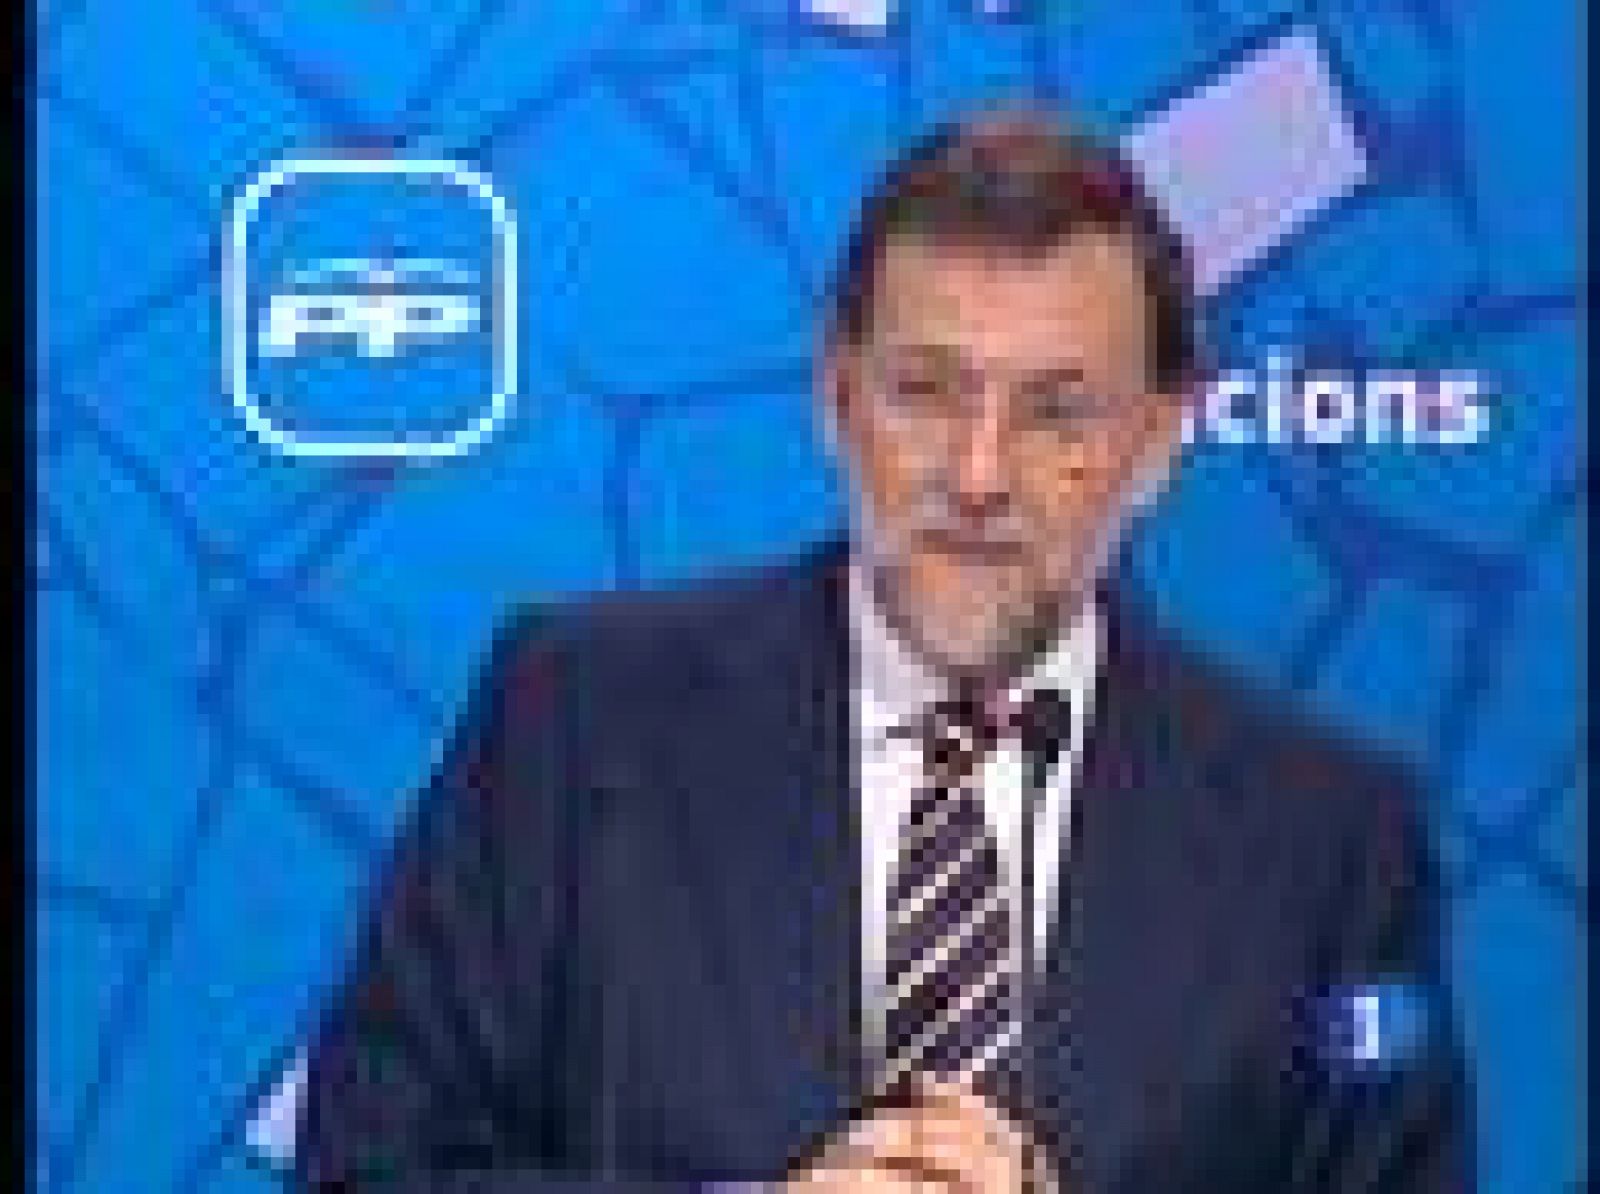 En Barcelona y tras la polémica suscitada en el ayuntamiento de Vic que quería negar el empadronamiento a los sin papeles, Rajoy ha reabierto el debate sobre la capacidad de España para acoger inmigrantes.  